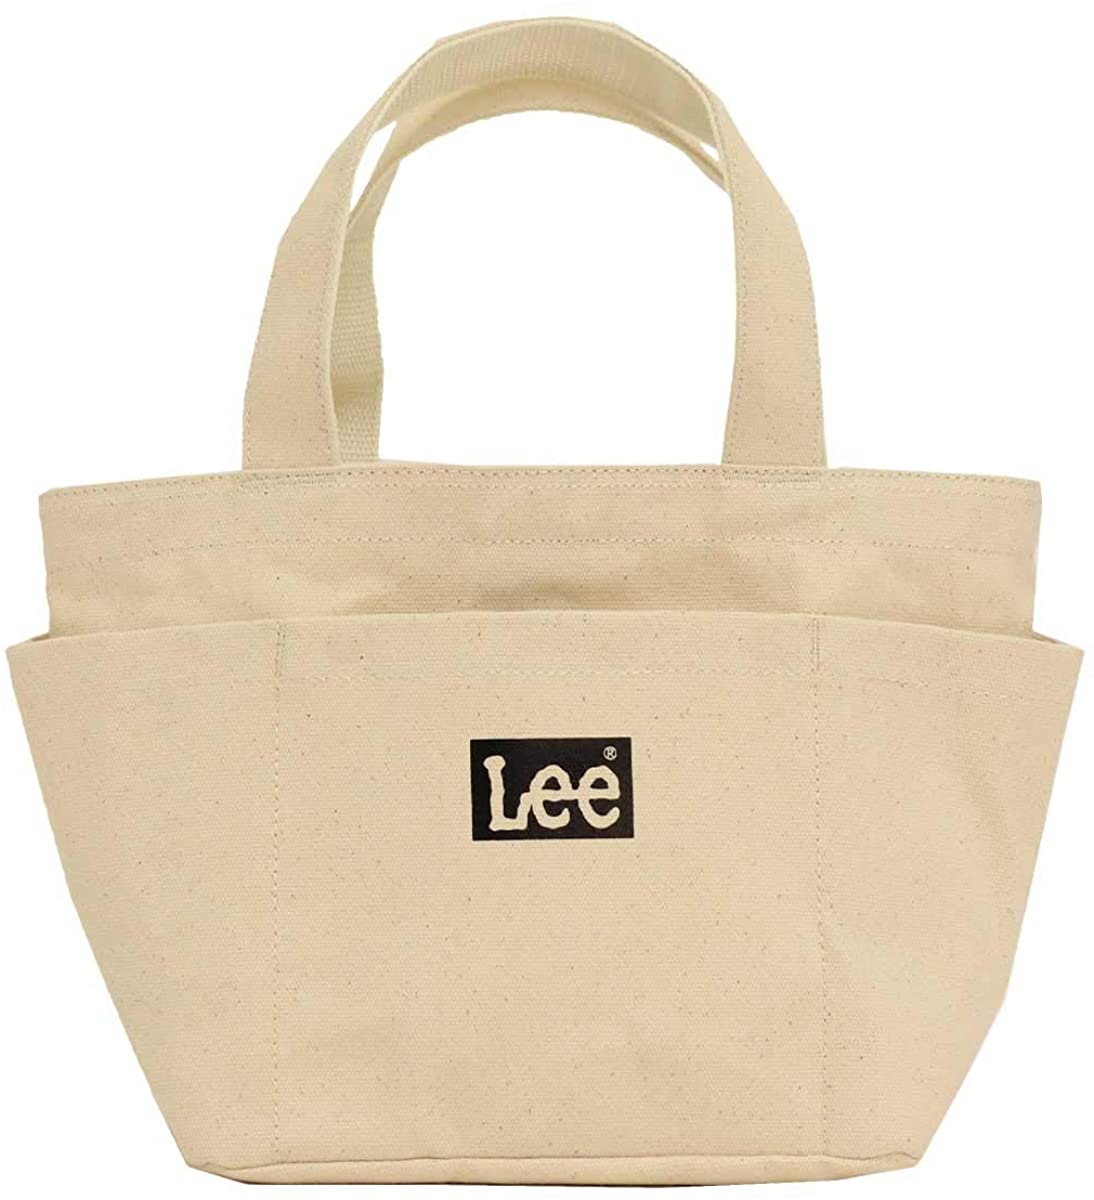 その他バッグおすすめ商品：Lee(リー) ミニトートバッグ